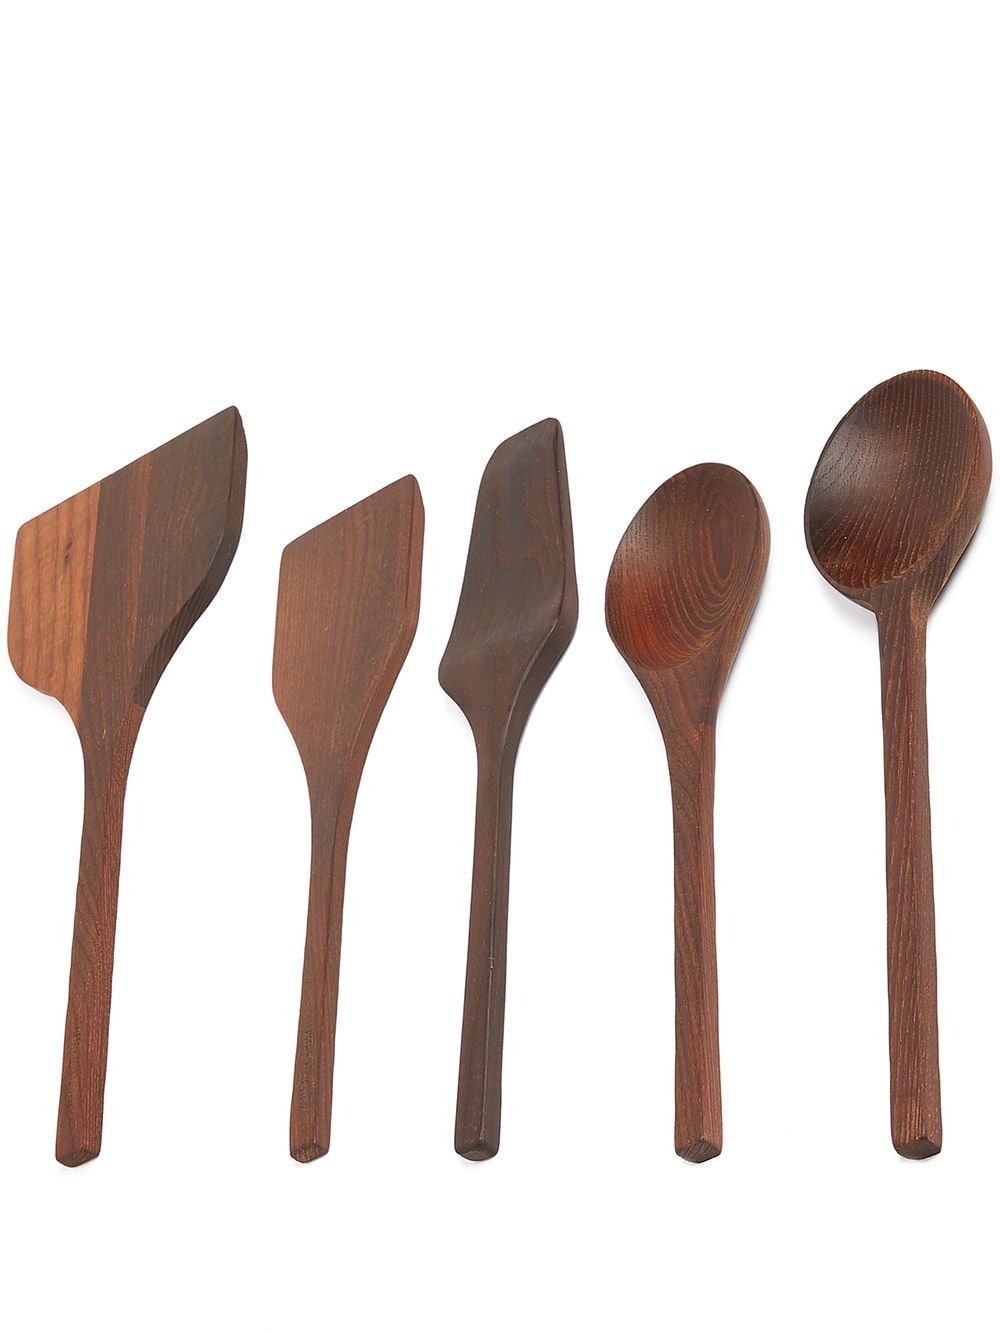 Serax Pure wooden kitchen tools - Brown von Serax